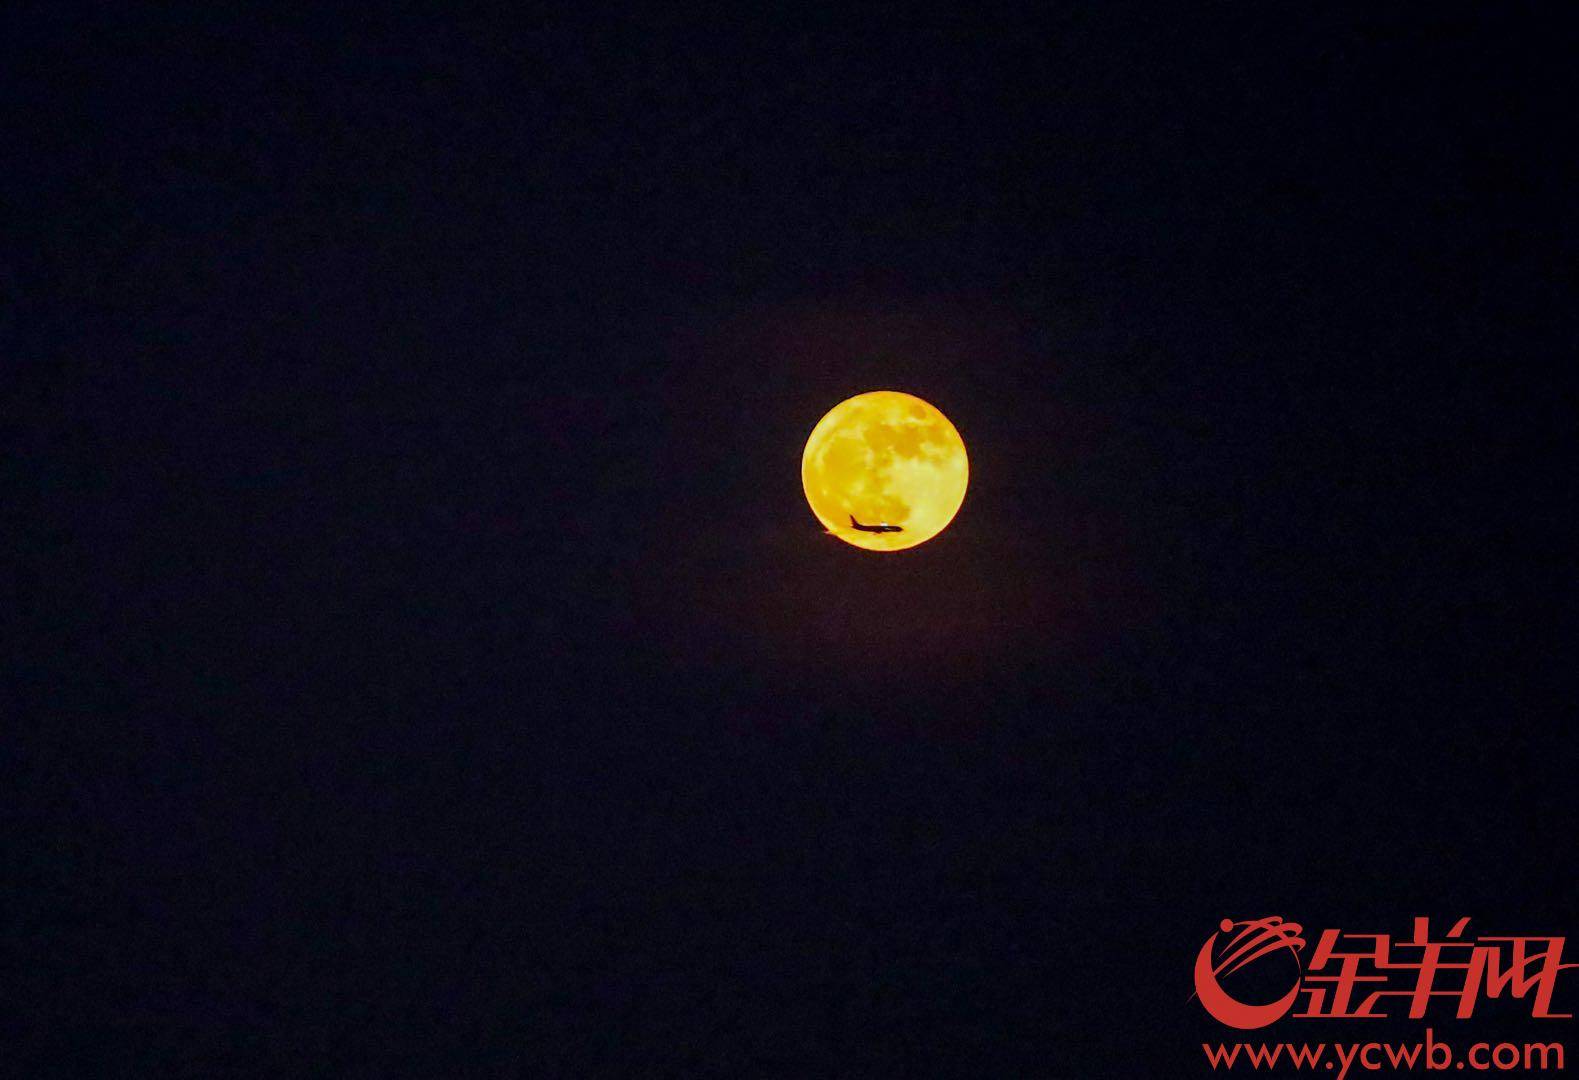 2020年10月2日,一架降落深圳宝安机场的飞机在月亮前横过